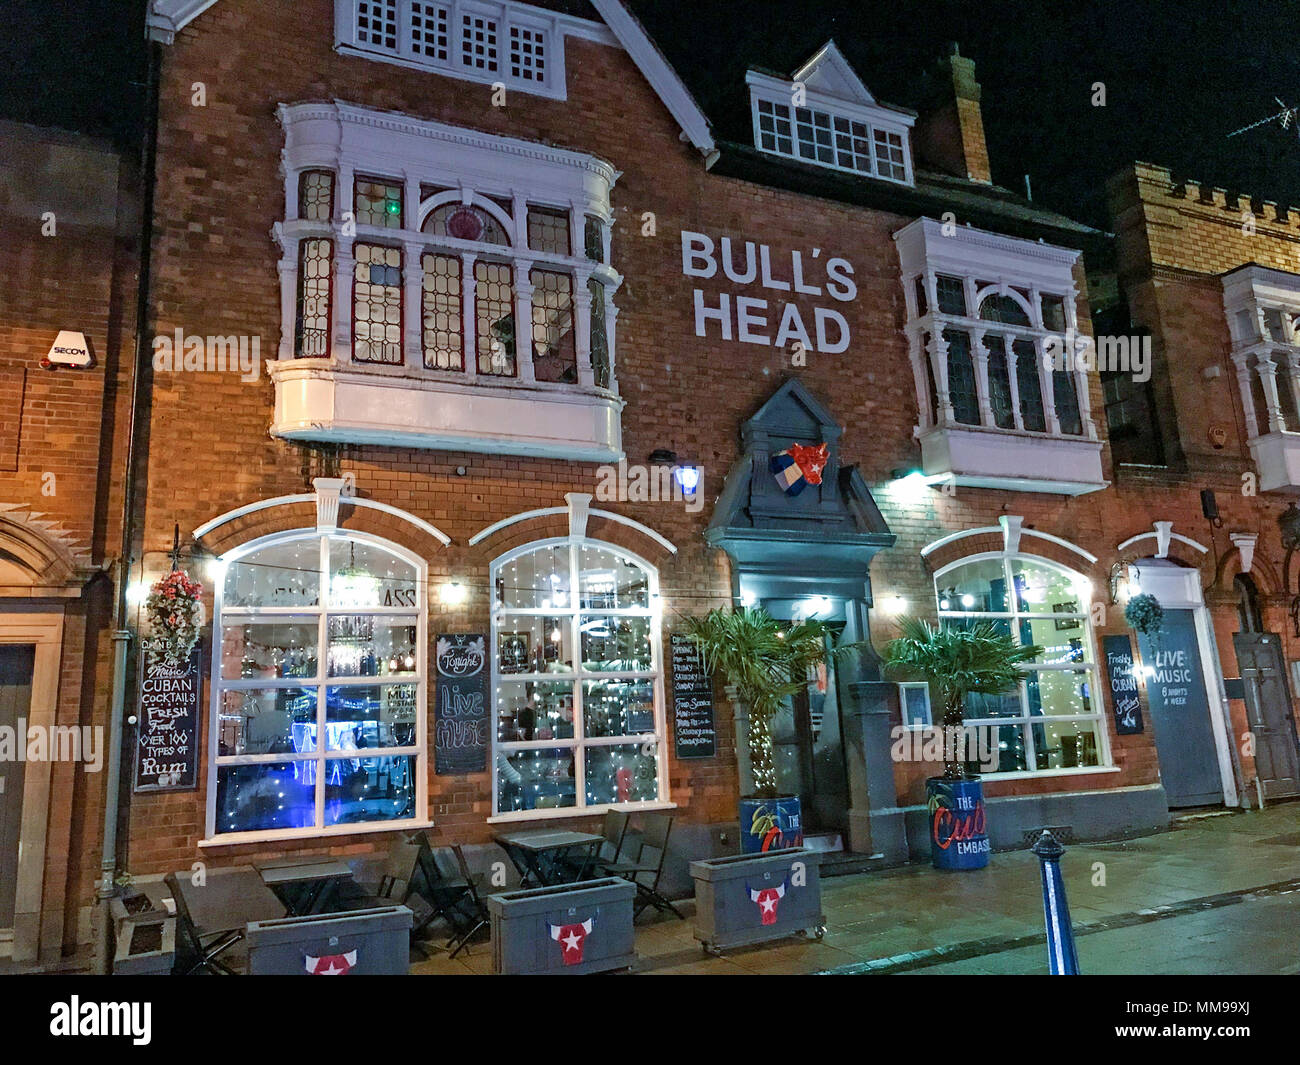 Bulls Head pub de nuit, 19 St Mary's Row, Moseley, Birmingham B13 8HW, UK Banque D'Images